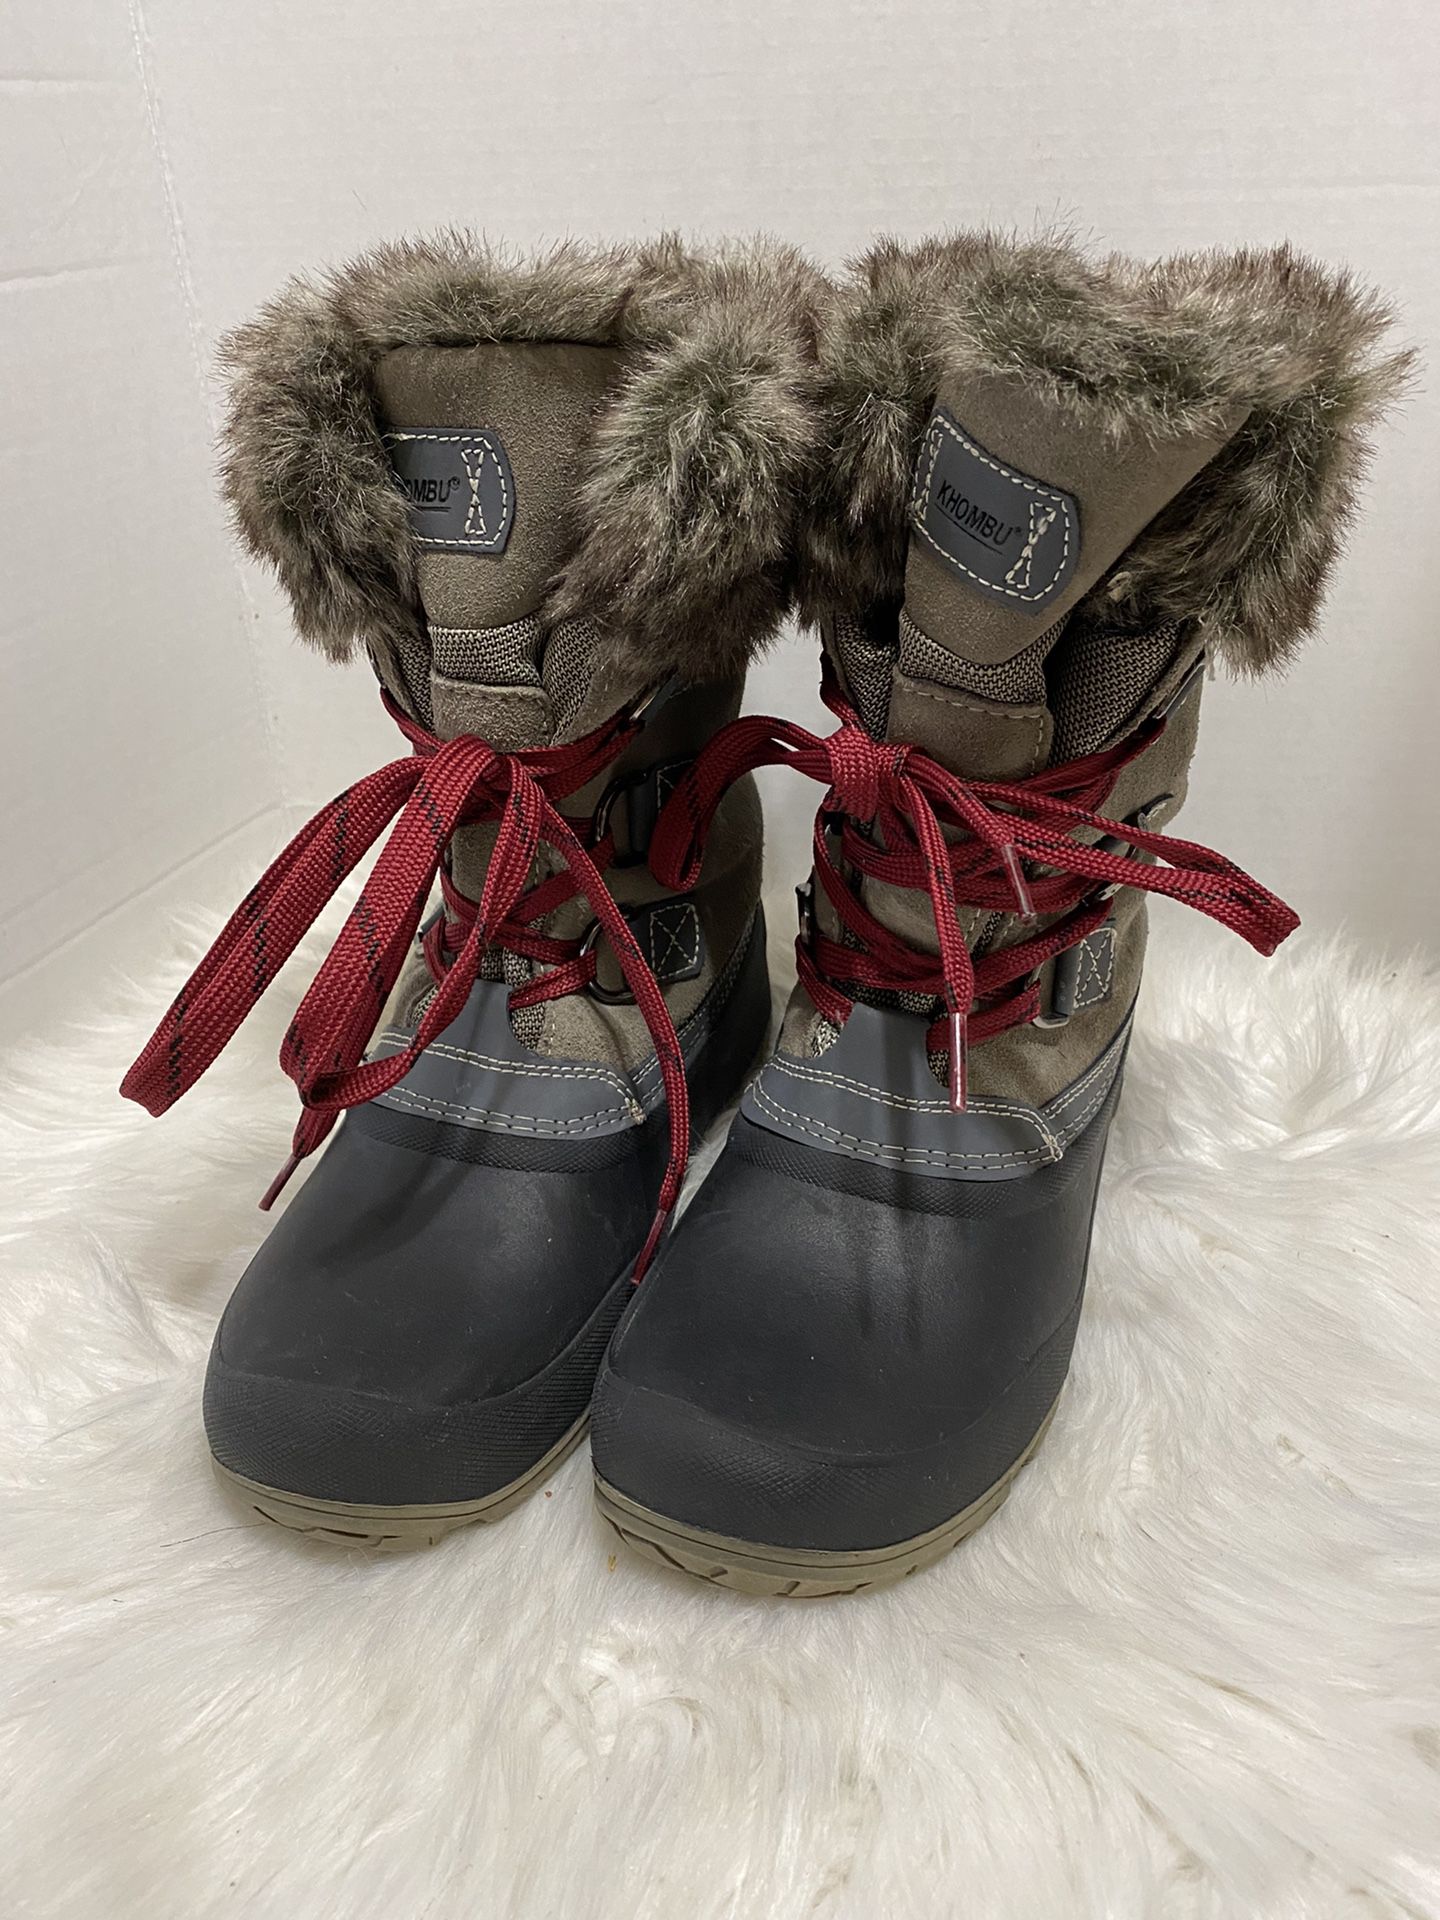 KHOMBU rain snow boots size 9